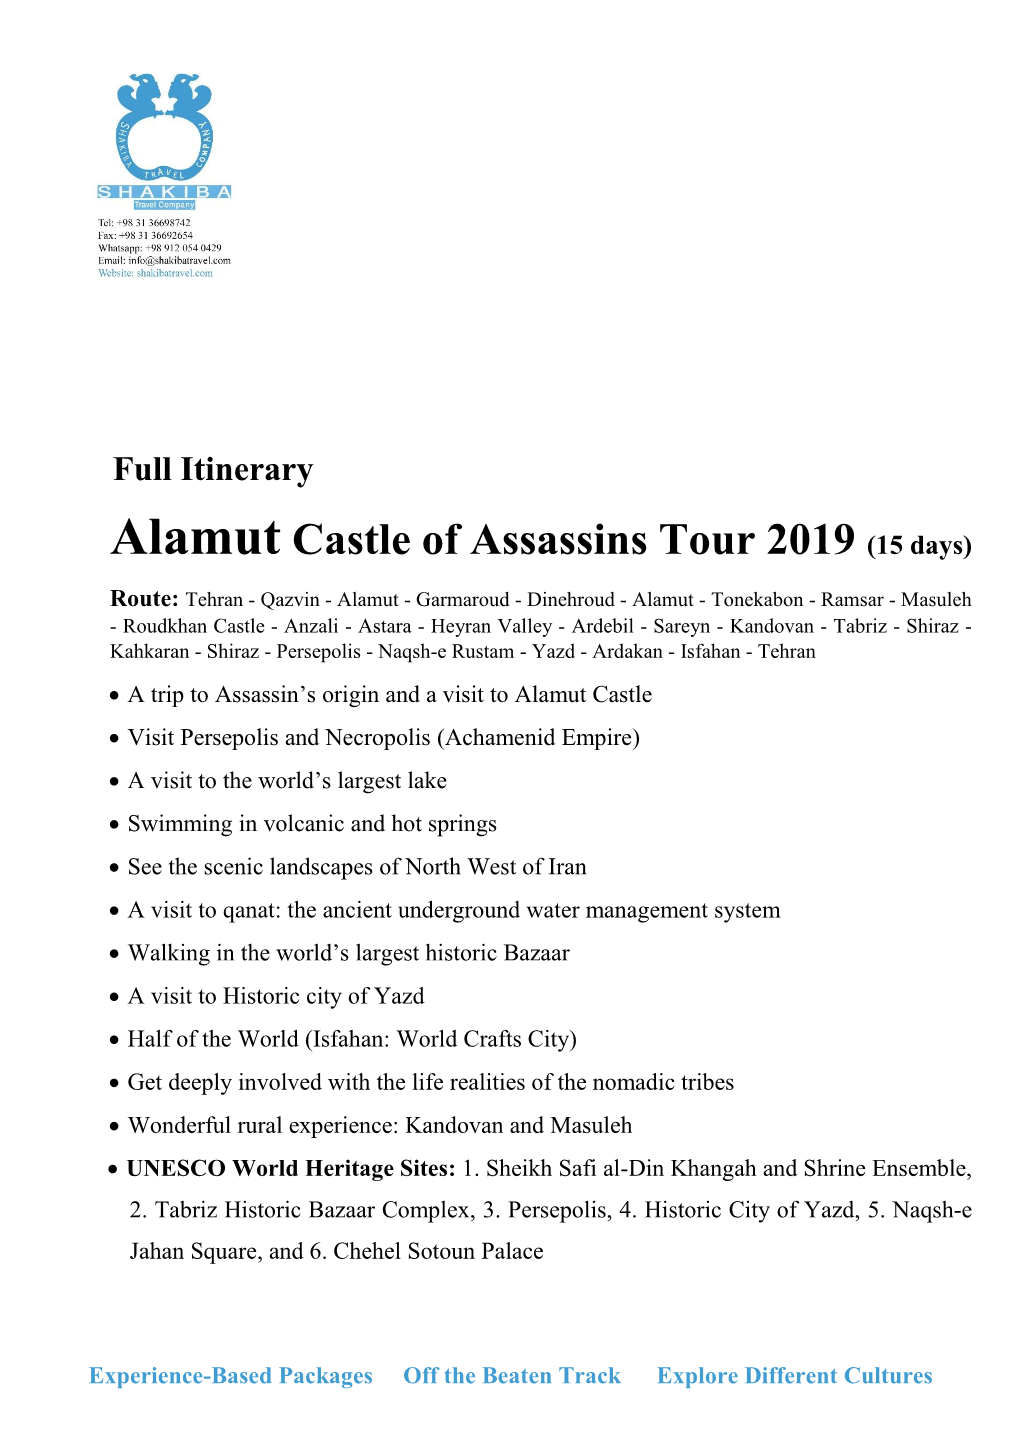 Alamut Castle of Assassins Tour 2019 (15 Days)